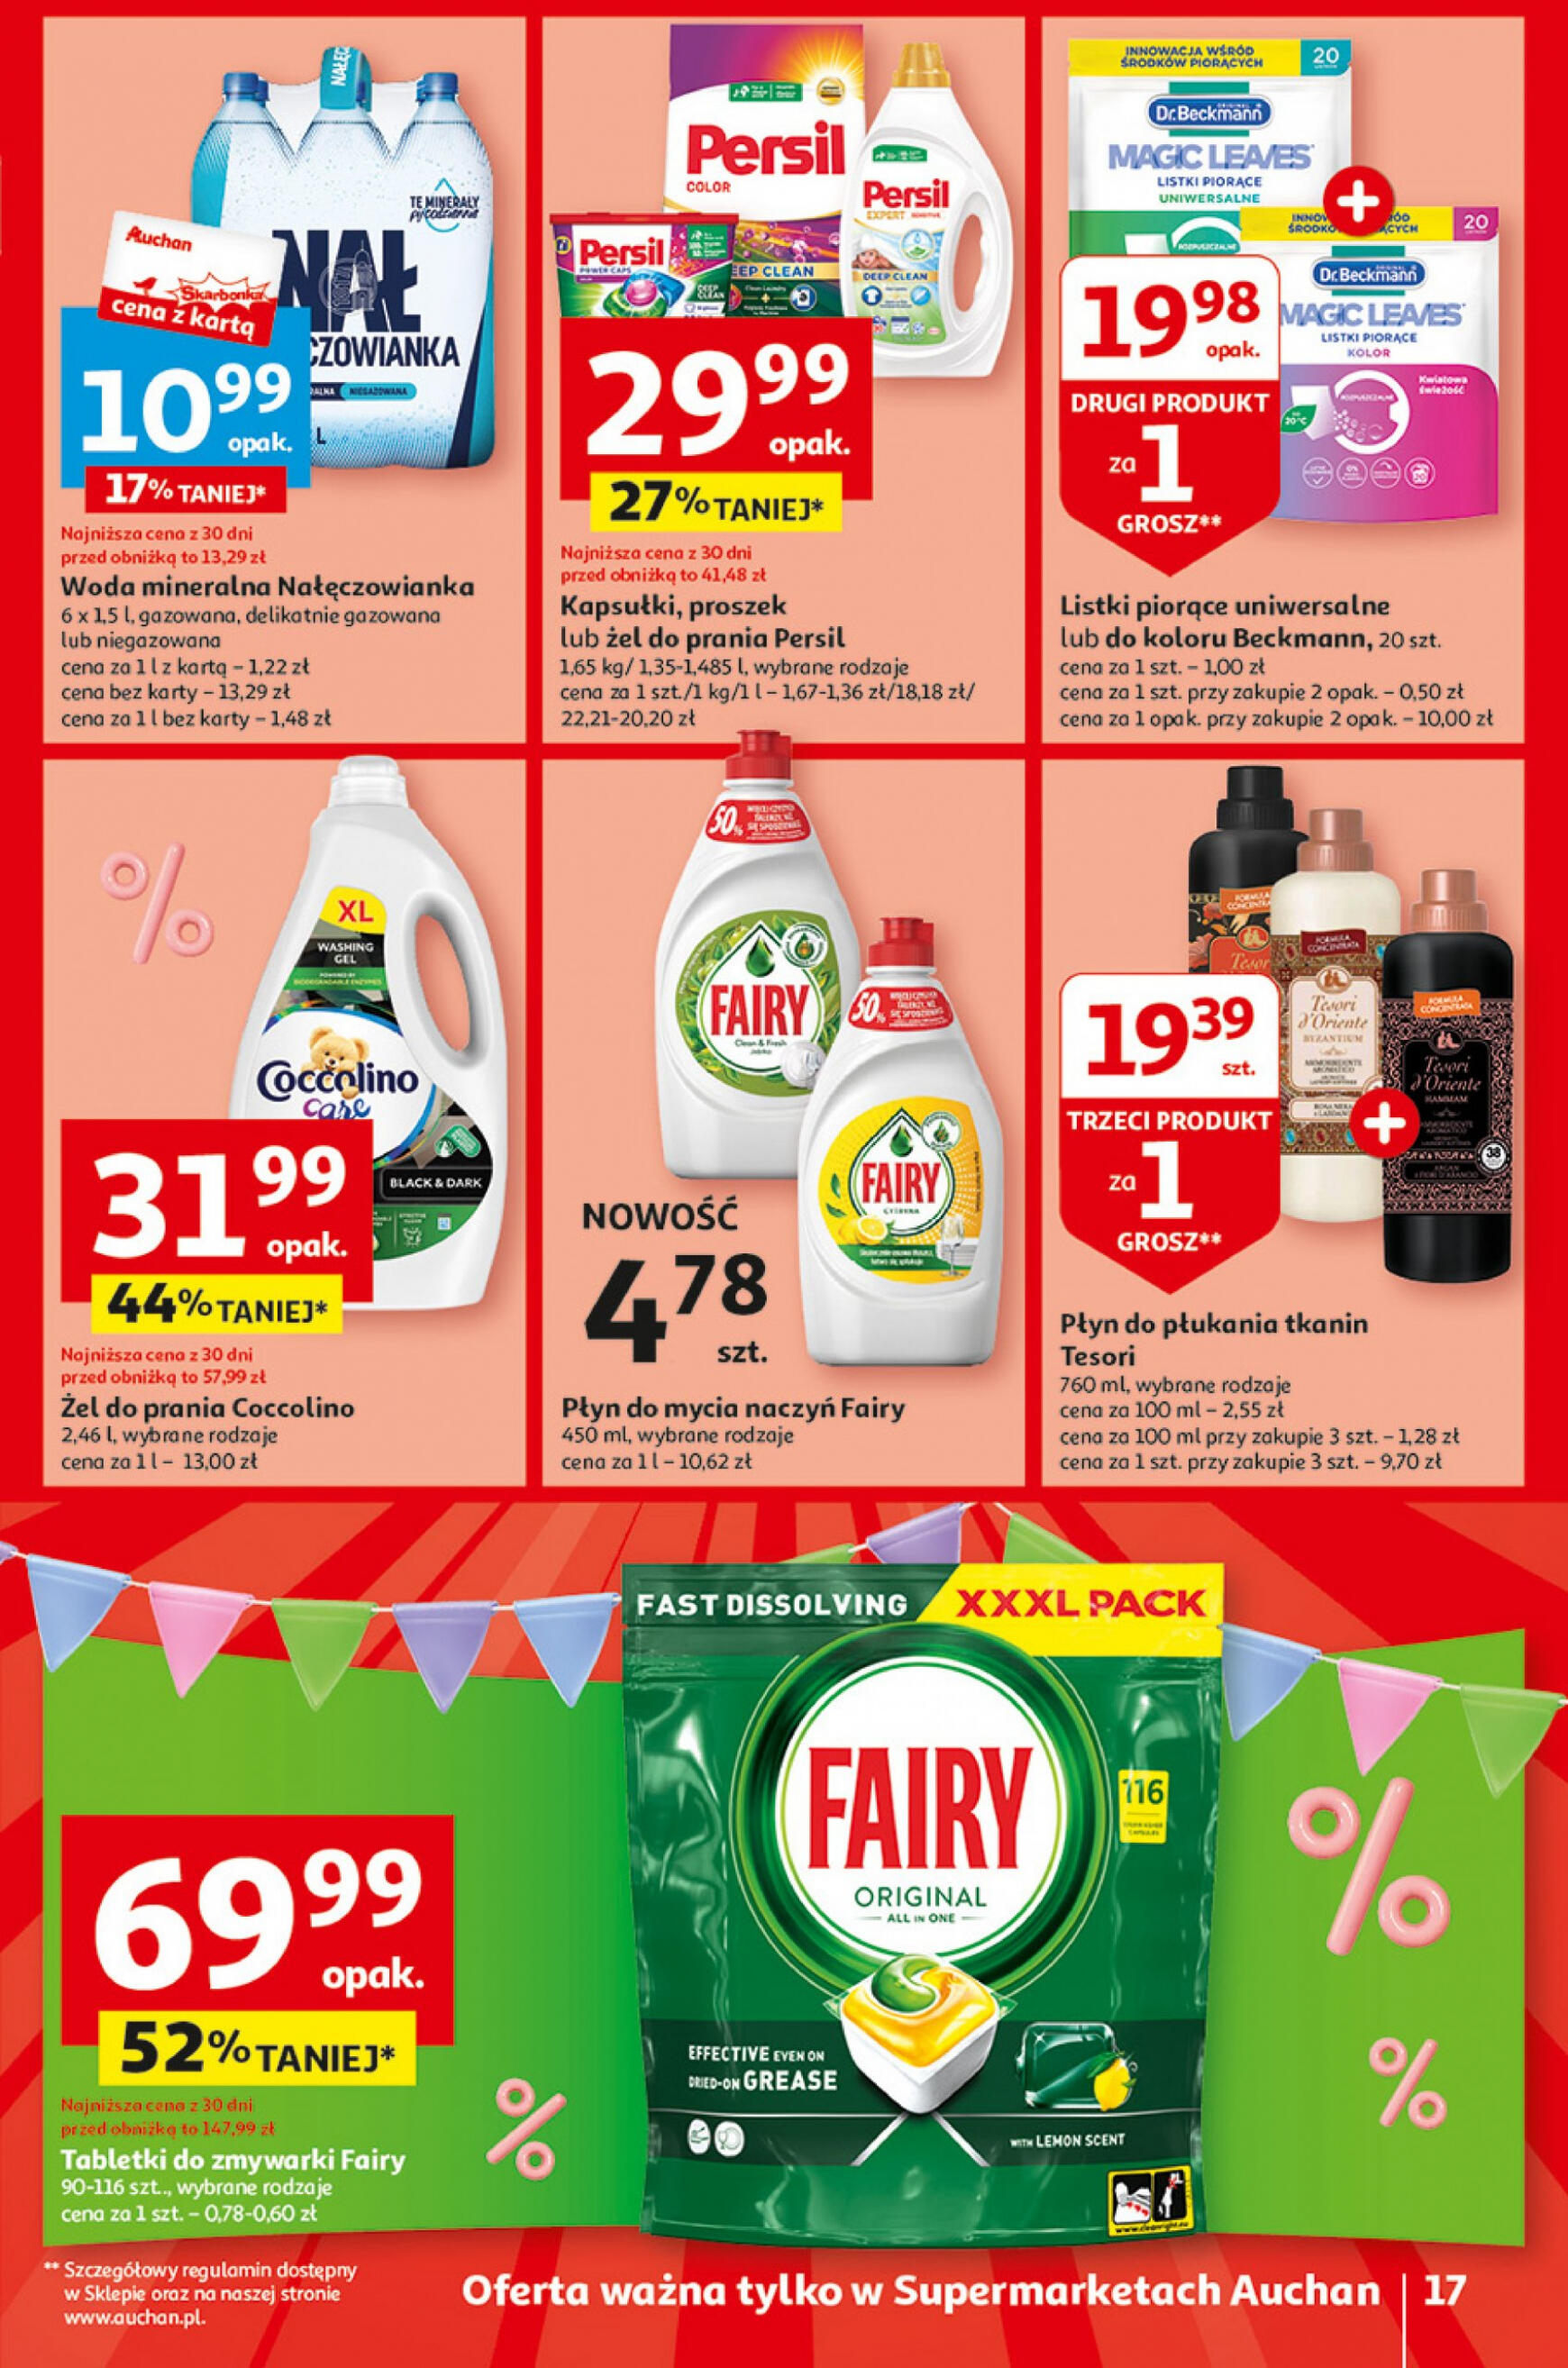 auchan - Supermarket Auchan - Gazetka Jeszcze taniej na urodziny gazetka aktualna ważna od 02.05. - 08.05. - page: 17